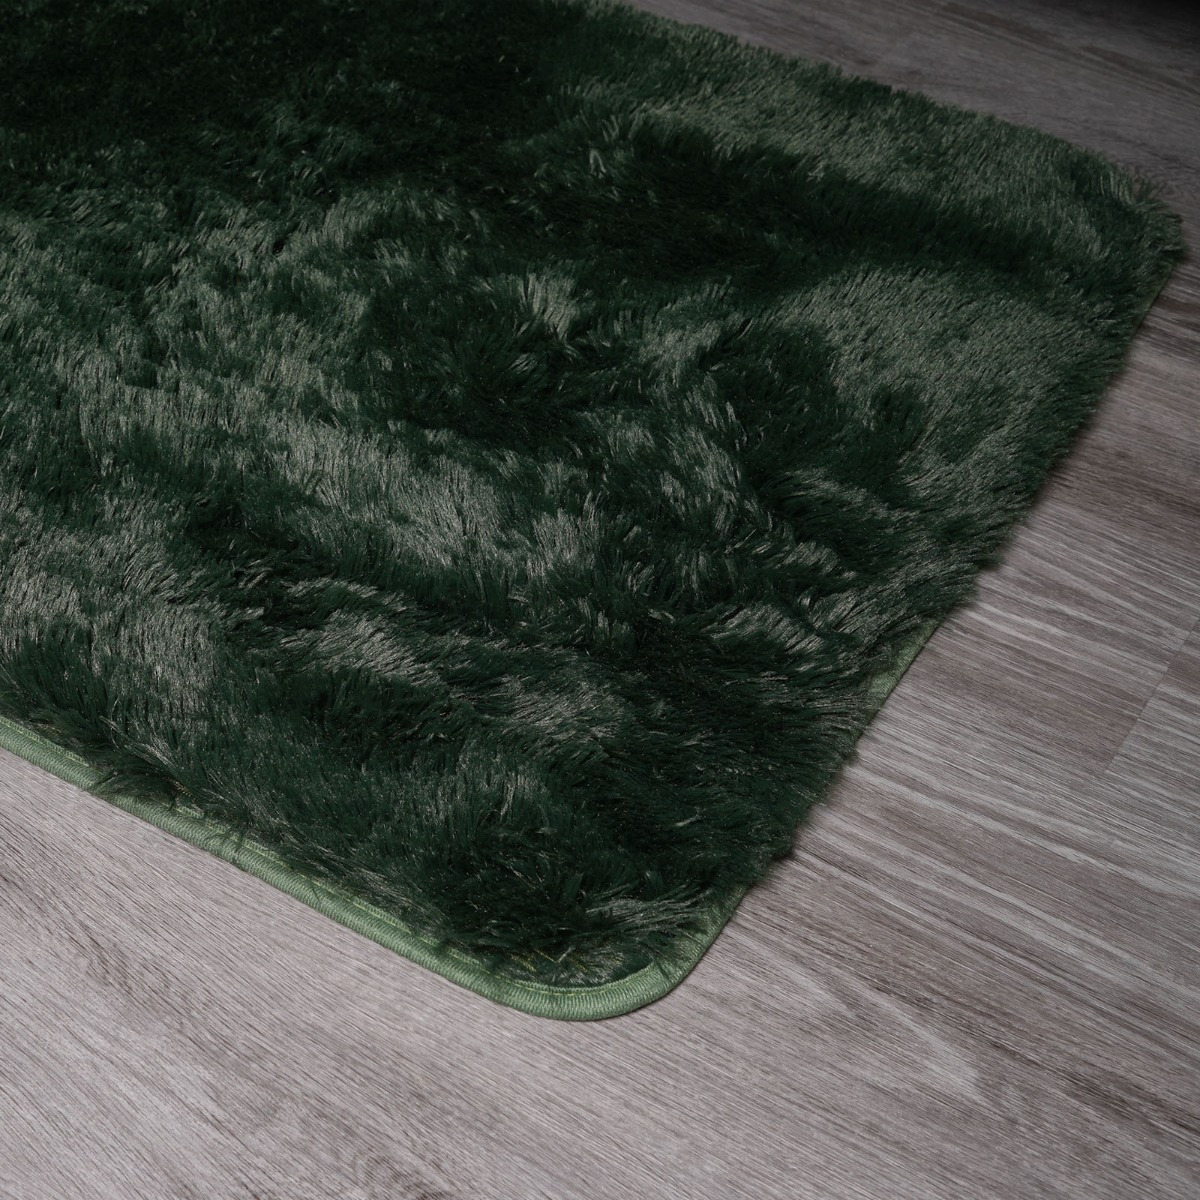 Sienna Fluffy Rug, Forest Green - 160 x 230cm>